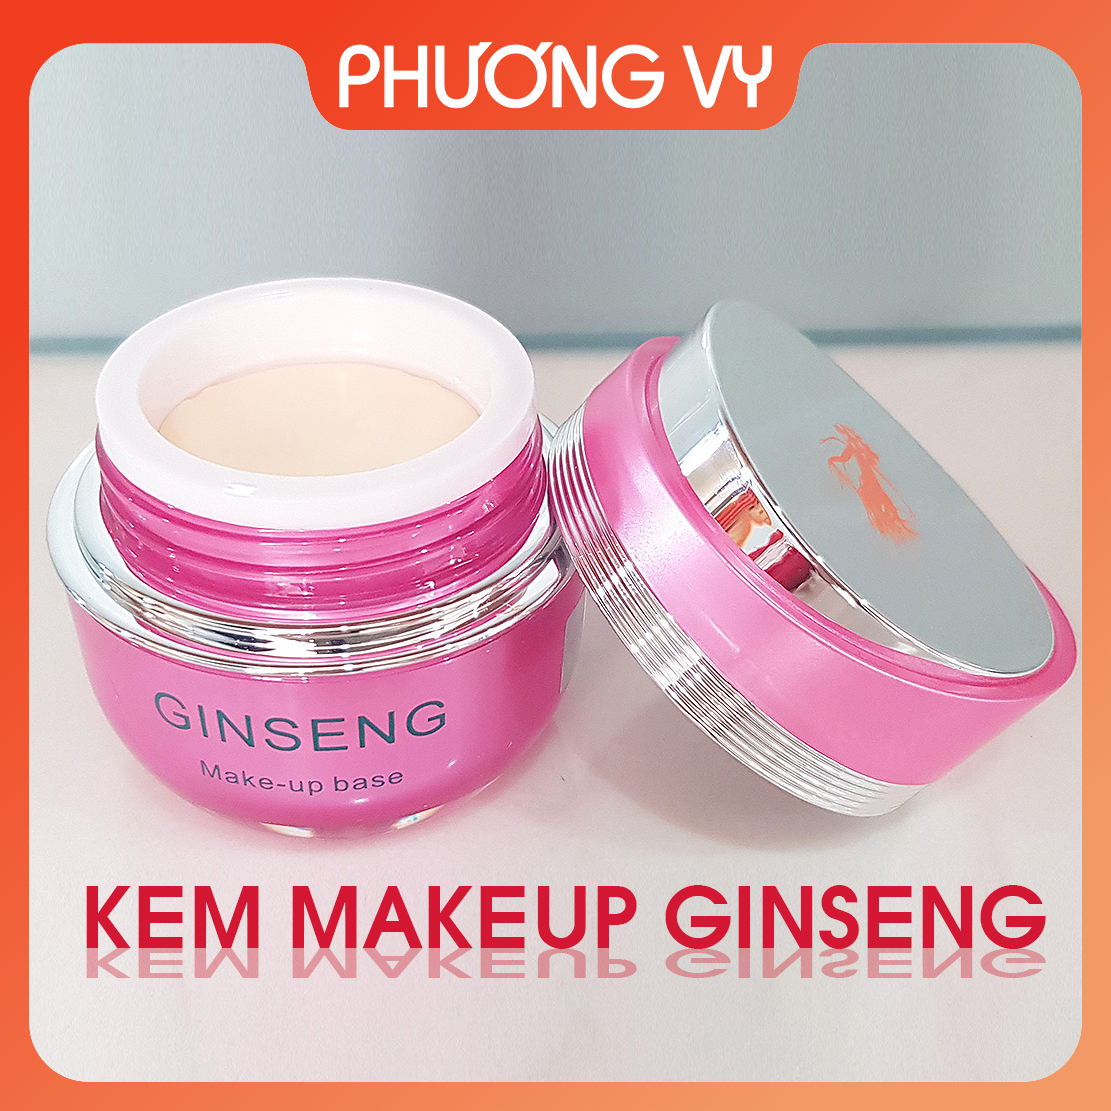 [CHÍNH HÃNG] Kem chống nắng Ginseng nhân sâm, giúp chống nắng và dưỡng ẩm cho da, kem nám Hàn Quốc, mỹ phẩm Ginseng.